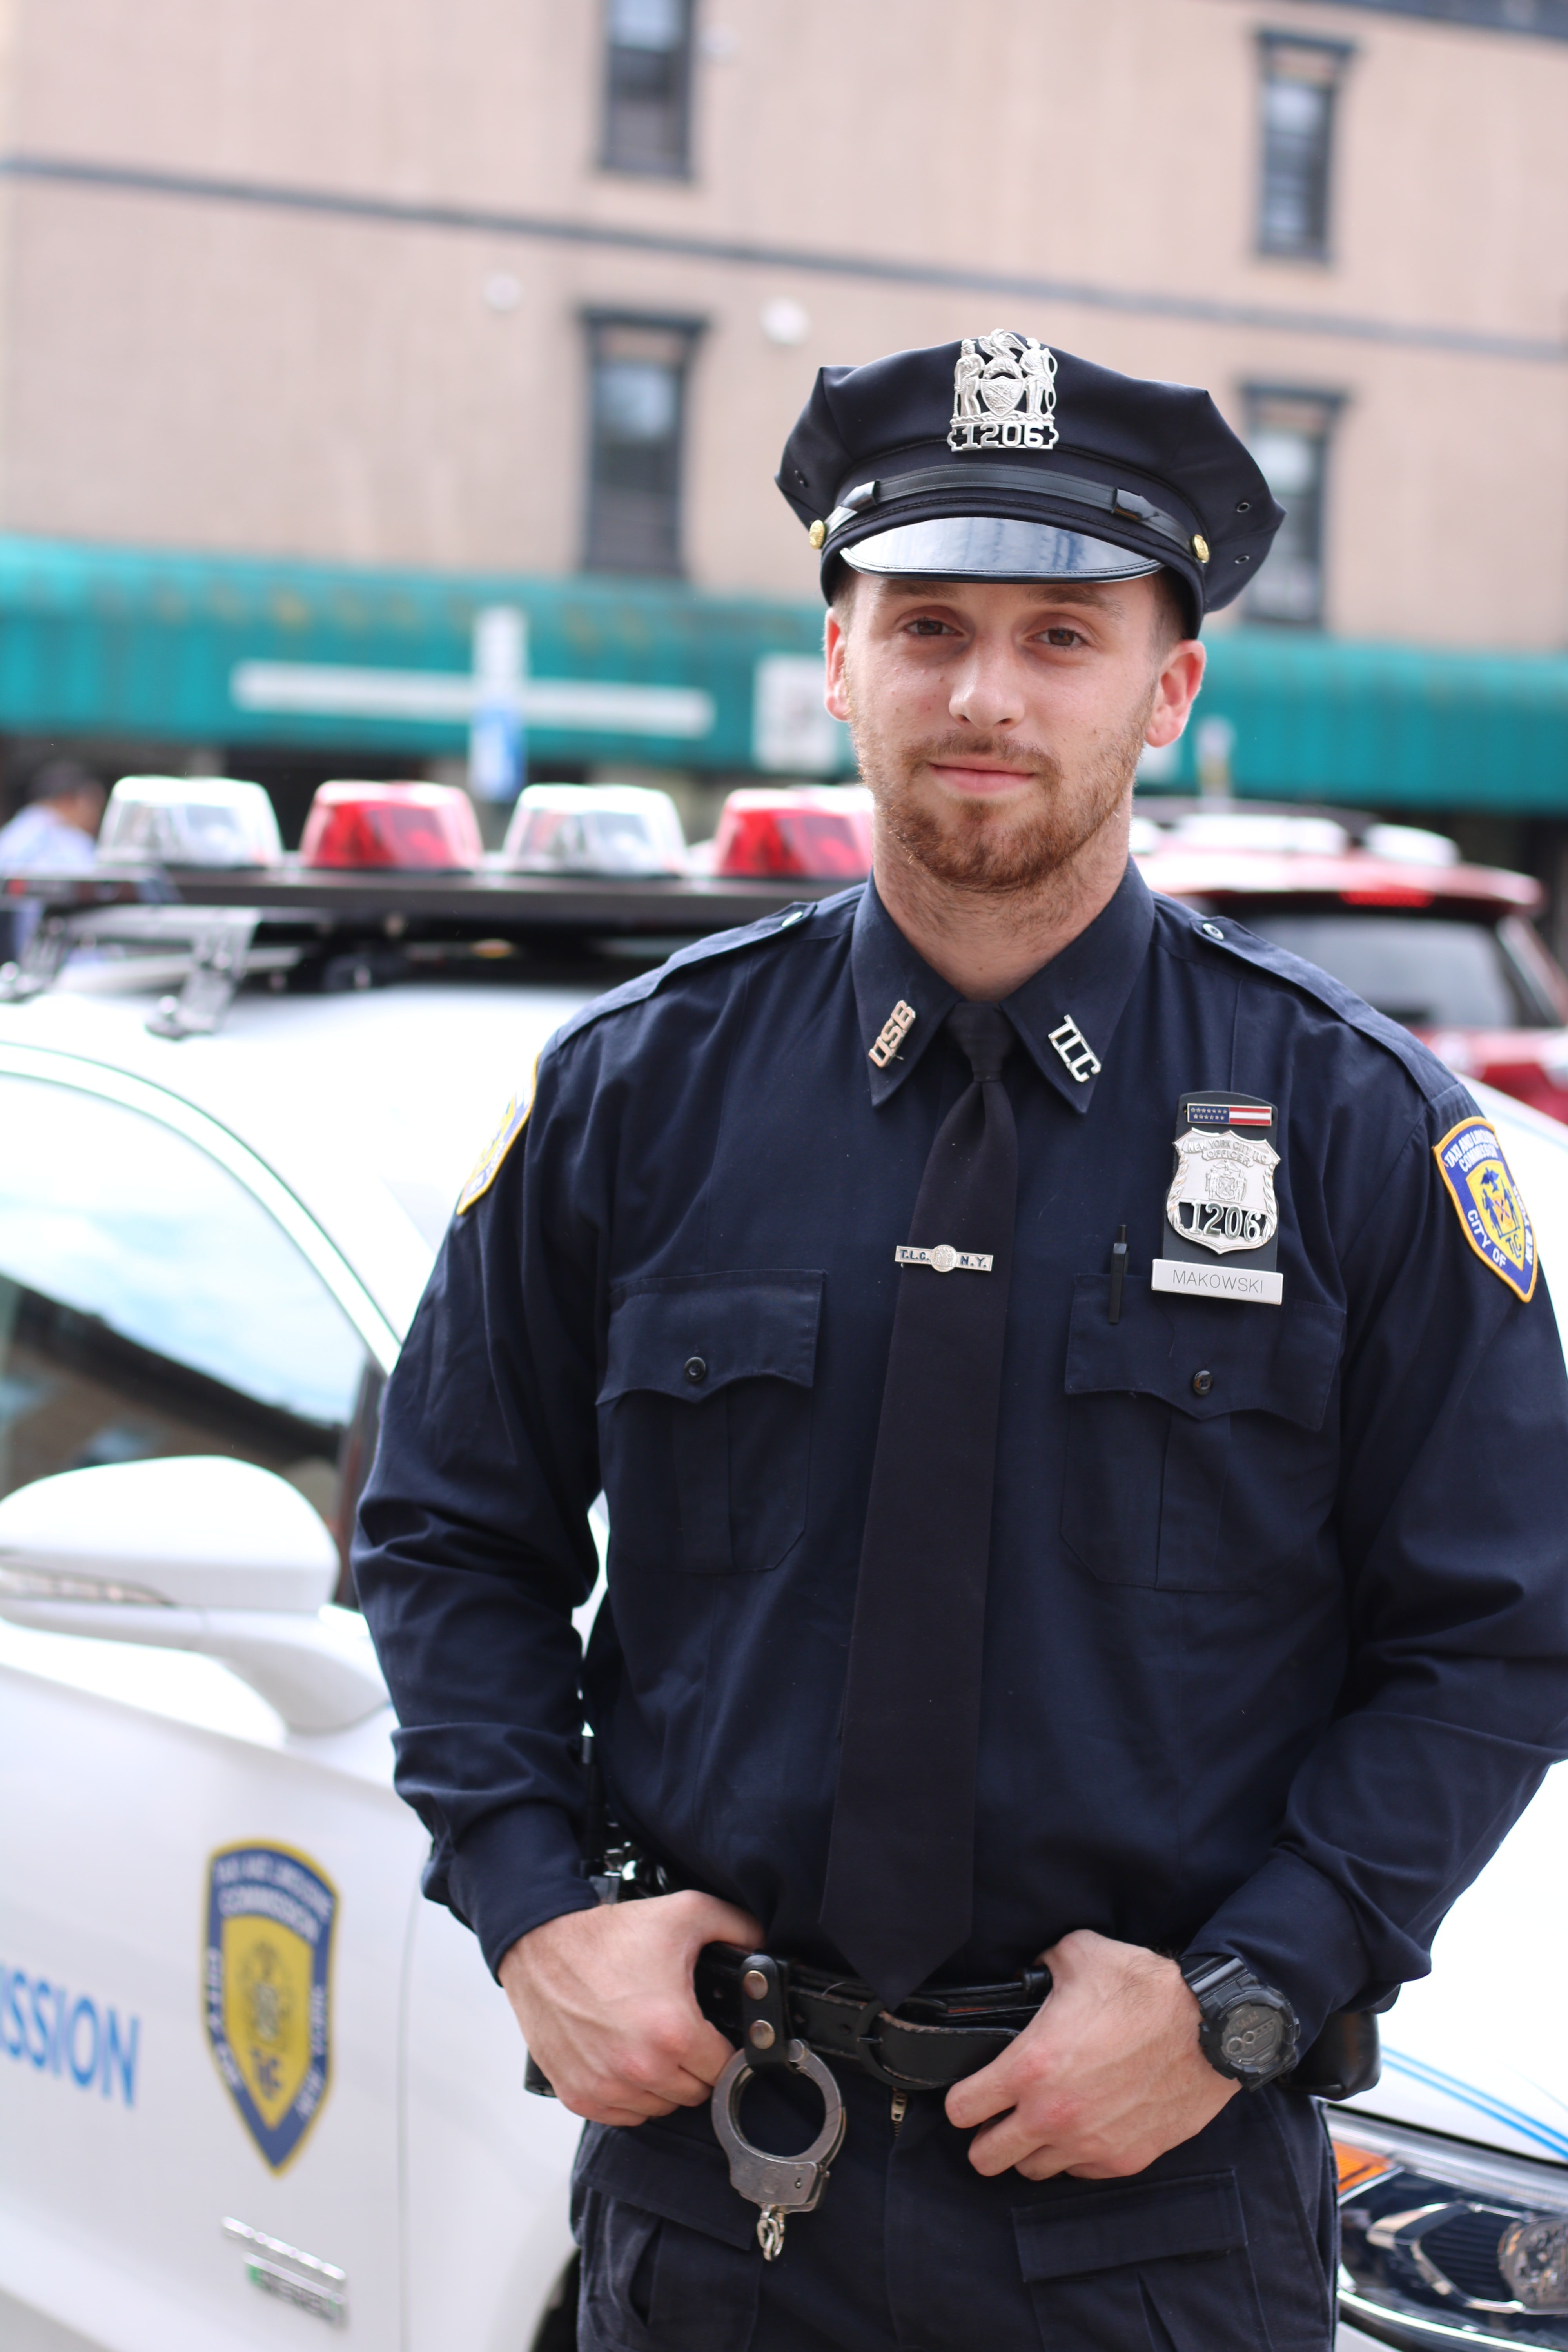 Oficial de policía cerca de un vehículo patrulla. | Foto: Pexels